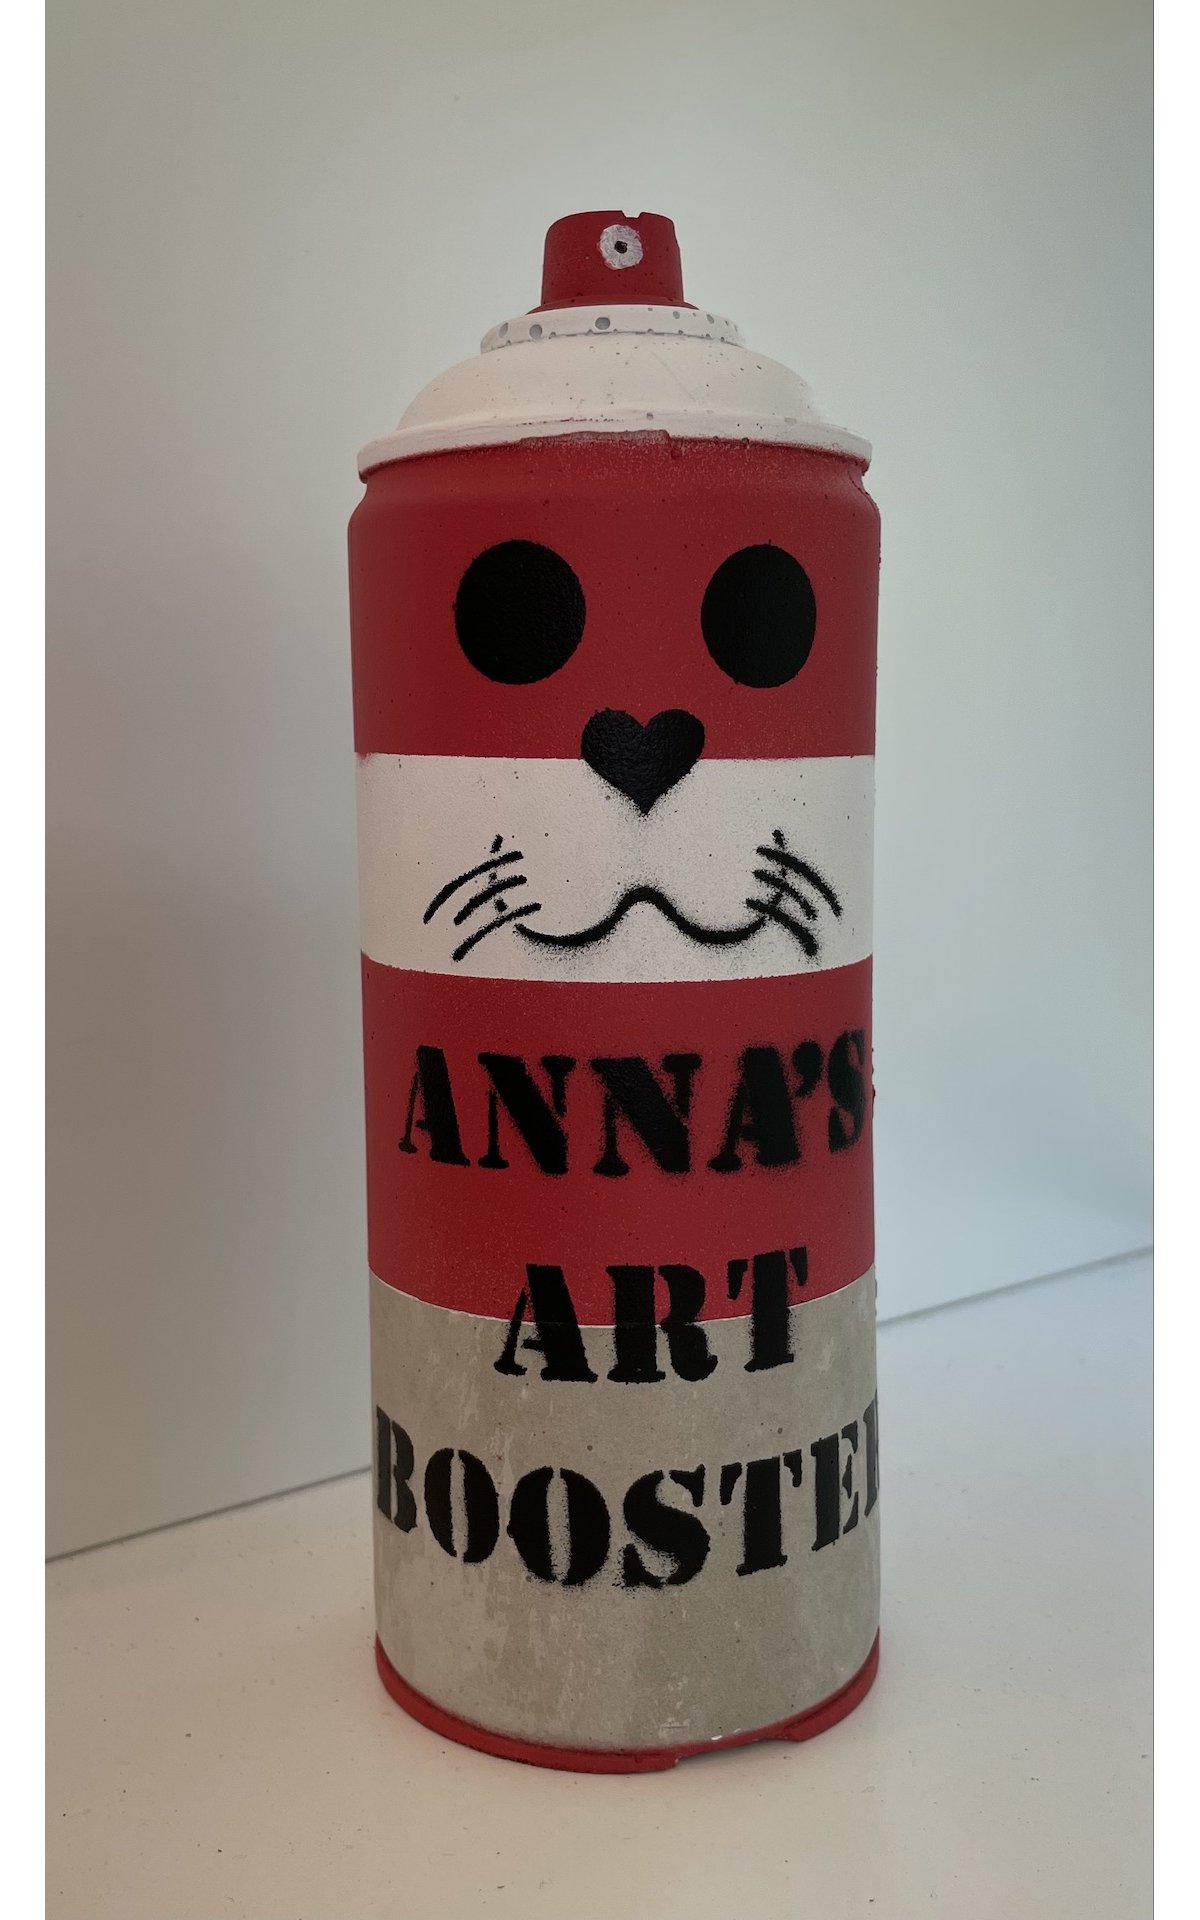 annas-art-booster-micart63--annasartaffair-streetart-popart-hamburggalerie-popstreet-popstreetshop-hamburggallery-contemporary-1